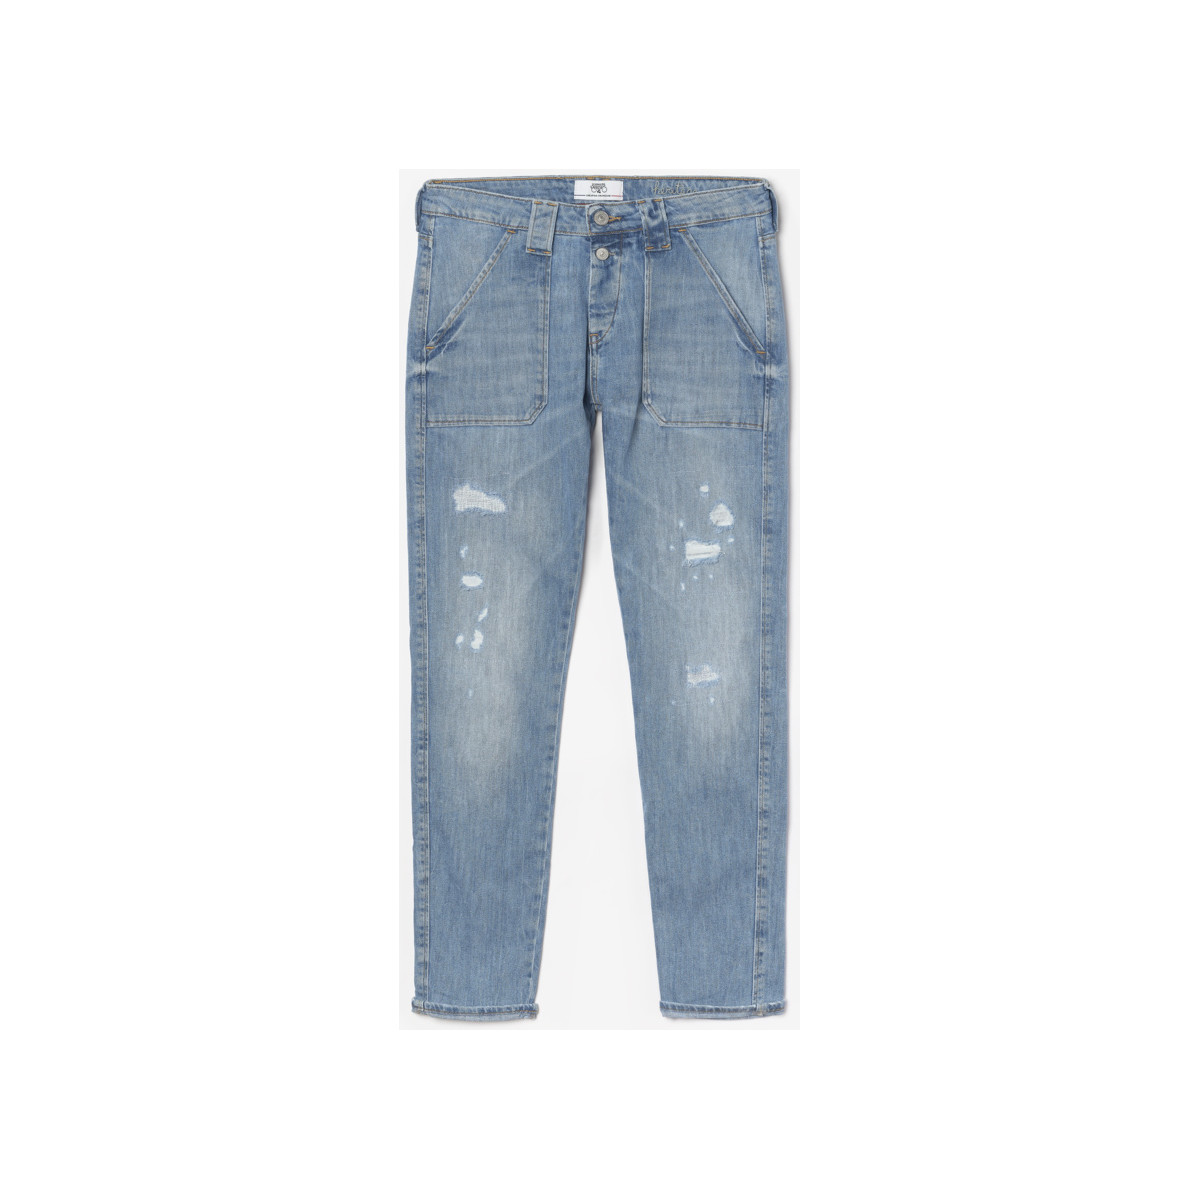 Le Temps des Cerises Bleu Cara 200/43 boyfit jeans dest